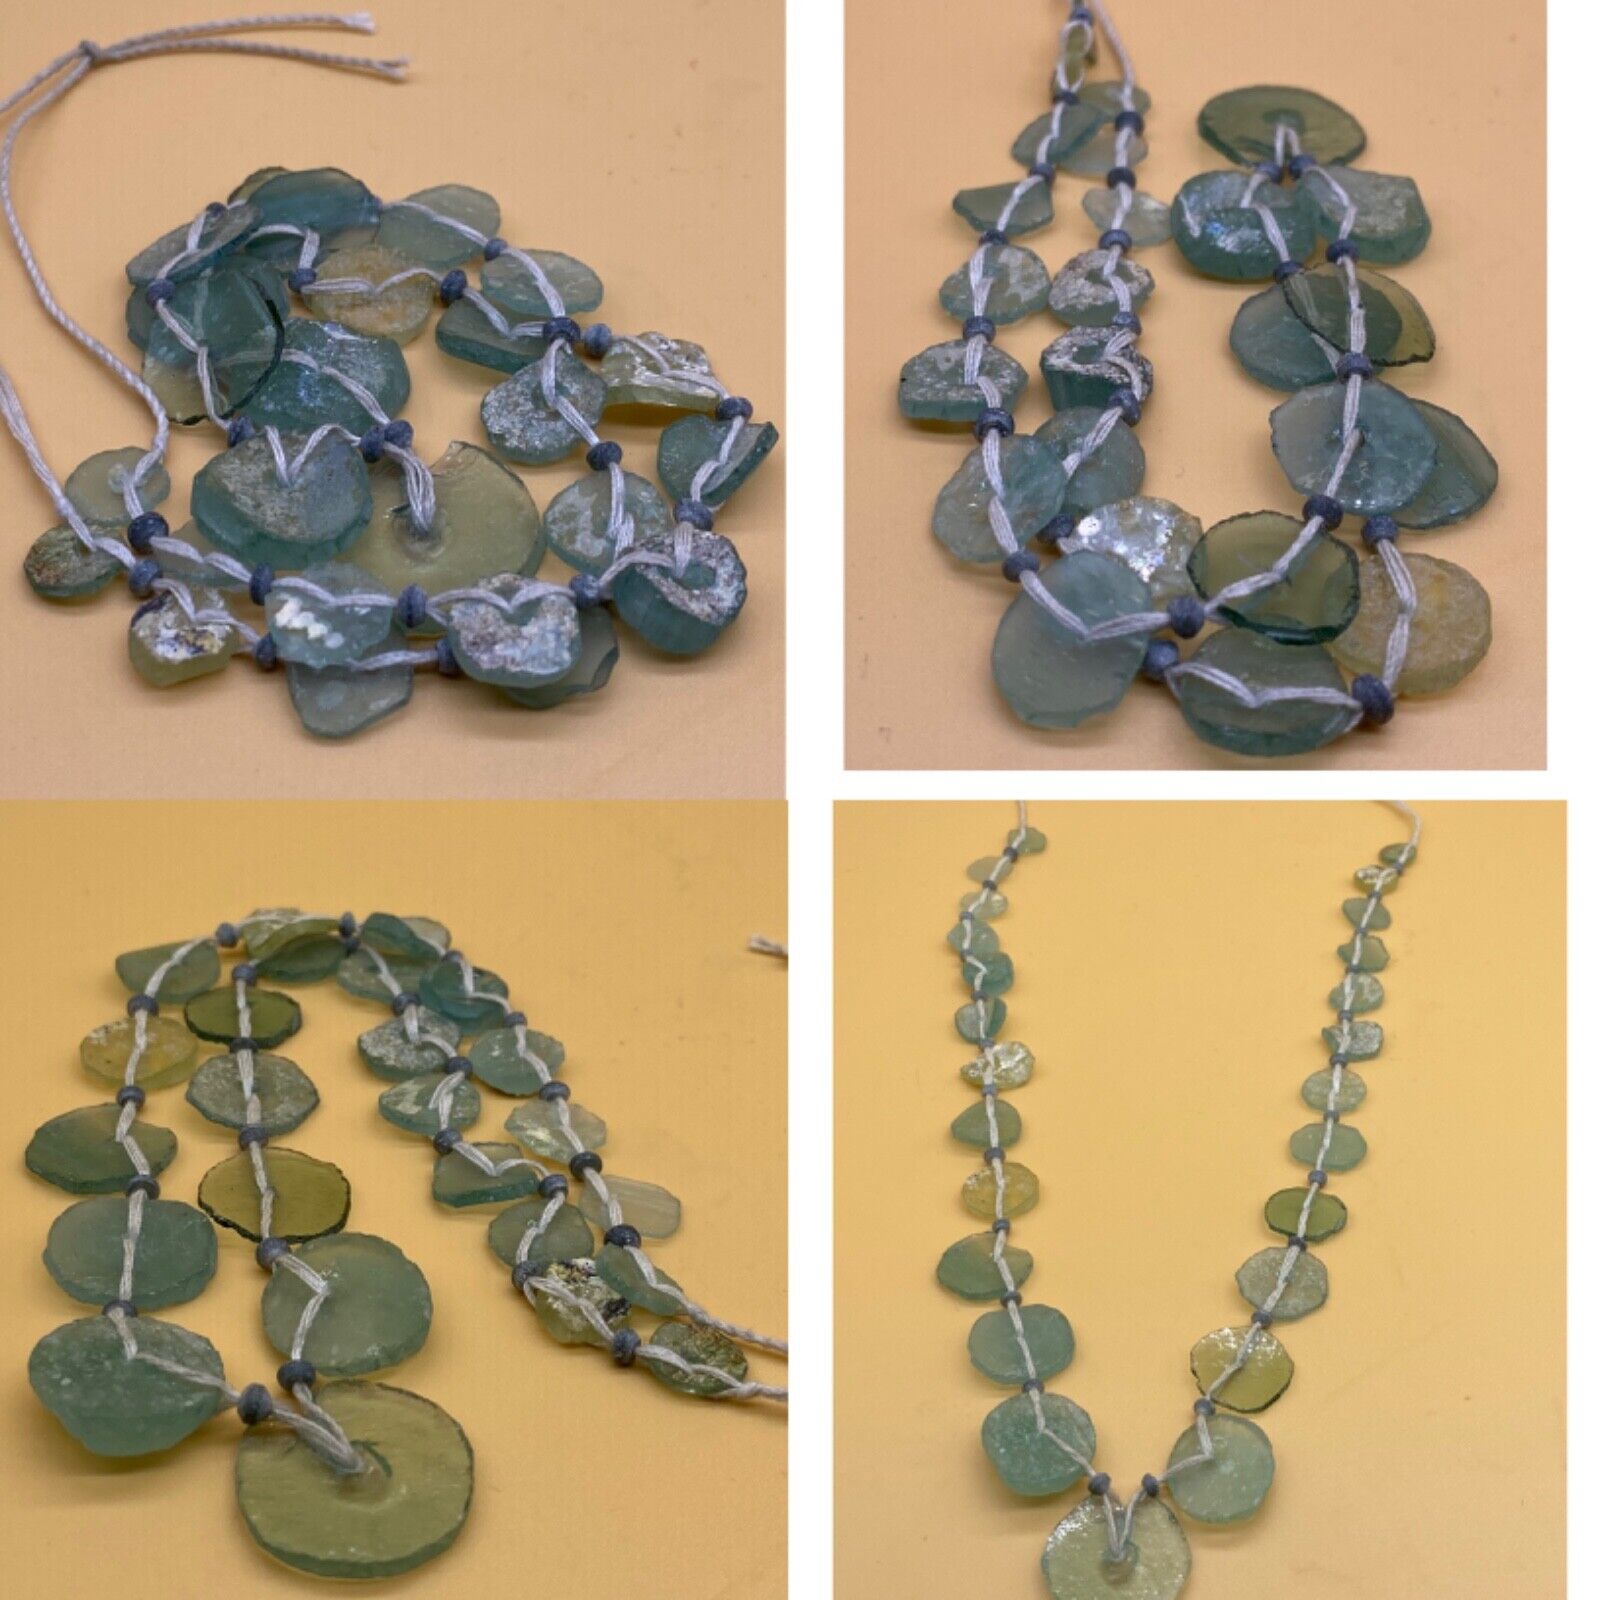  Unique Rare Ancient Roman glass beads necklace 300 BC 